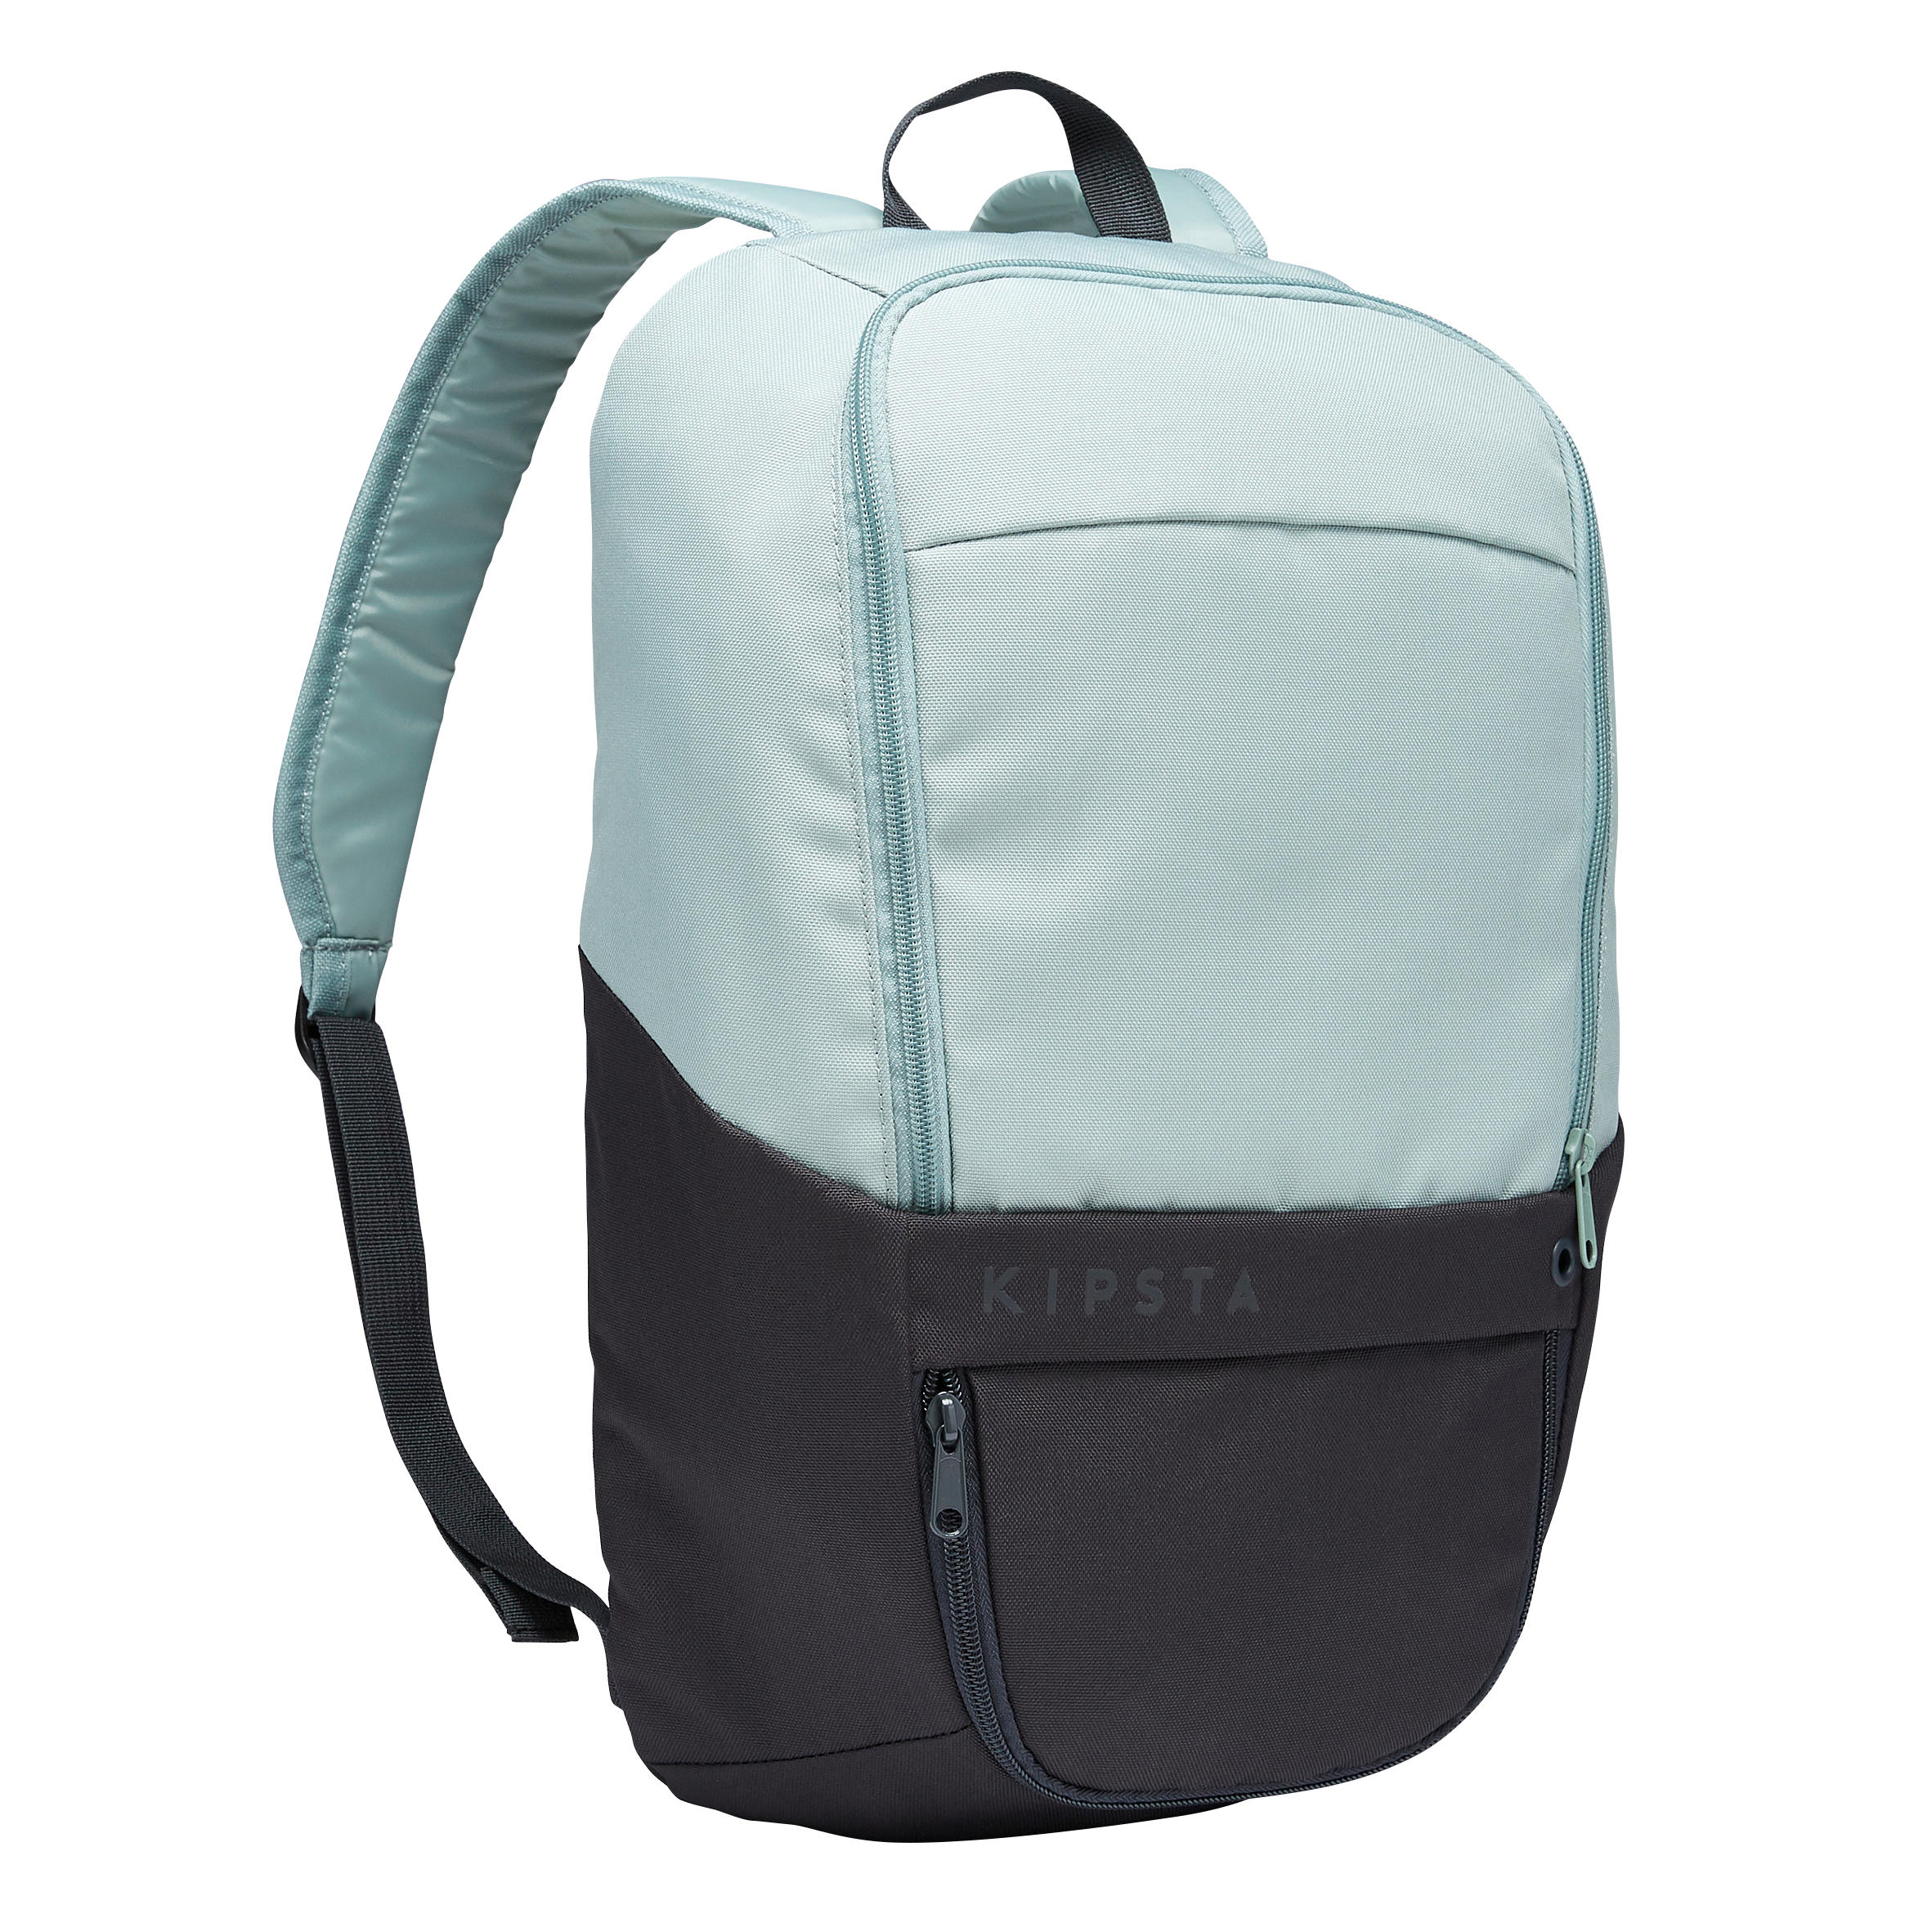 KIPSTA 17L Backpack ULPP - Grey/Light Green